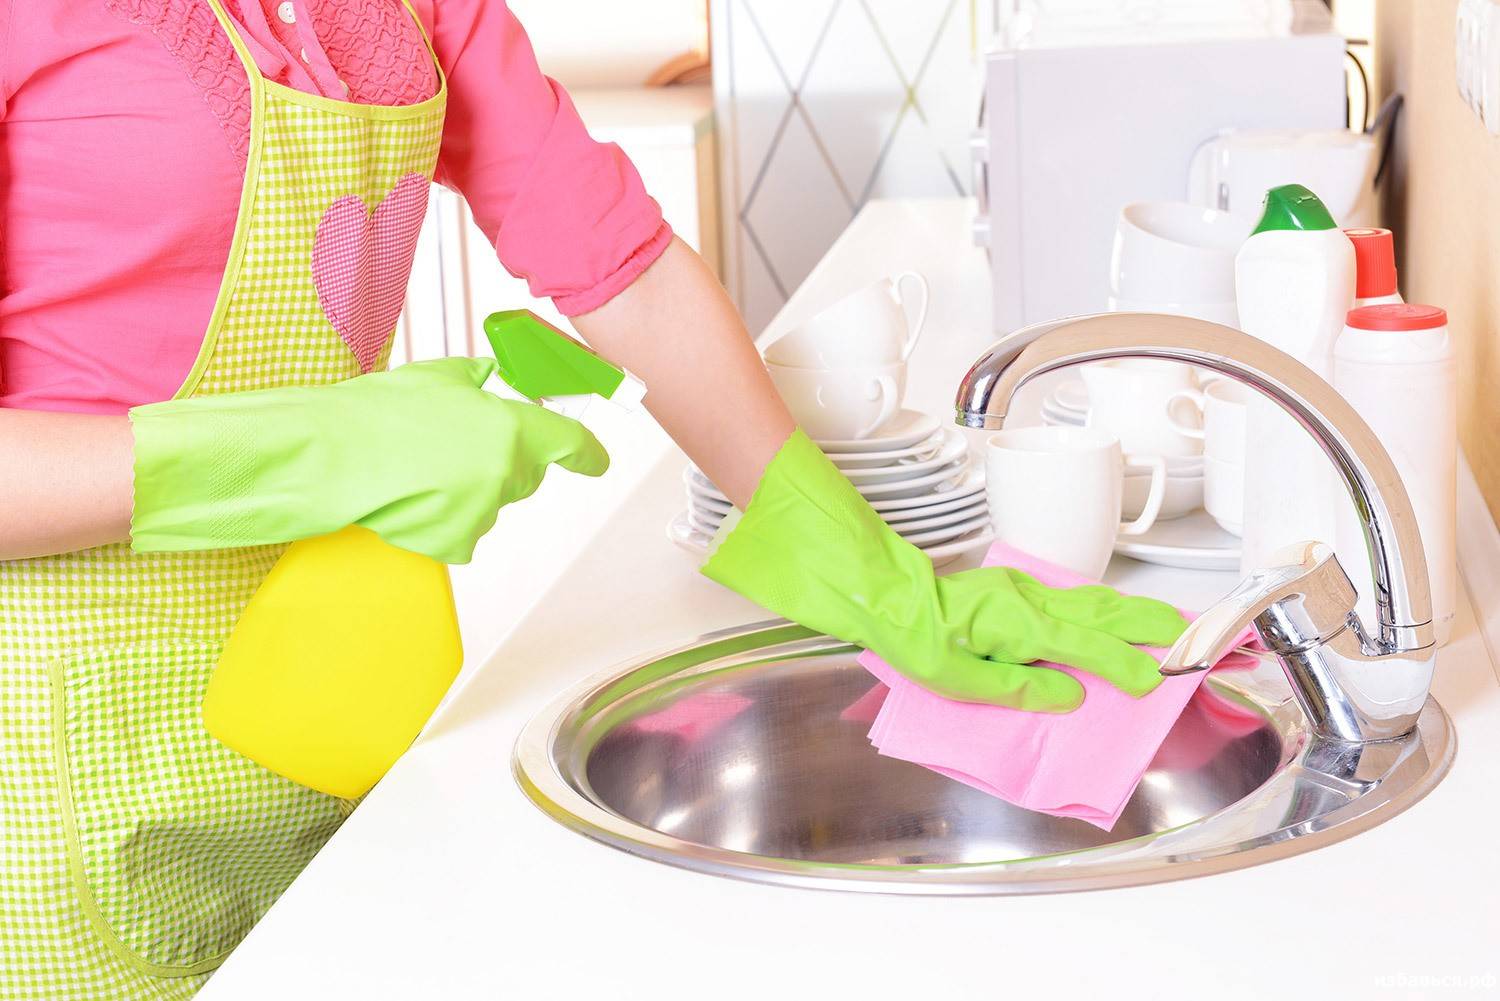 Как сэкономить время на уборке? советы, которые помогут держать квартиру в порядке без усилий